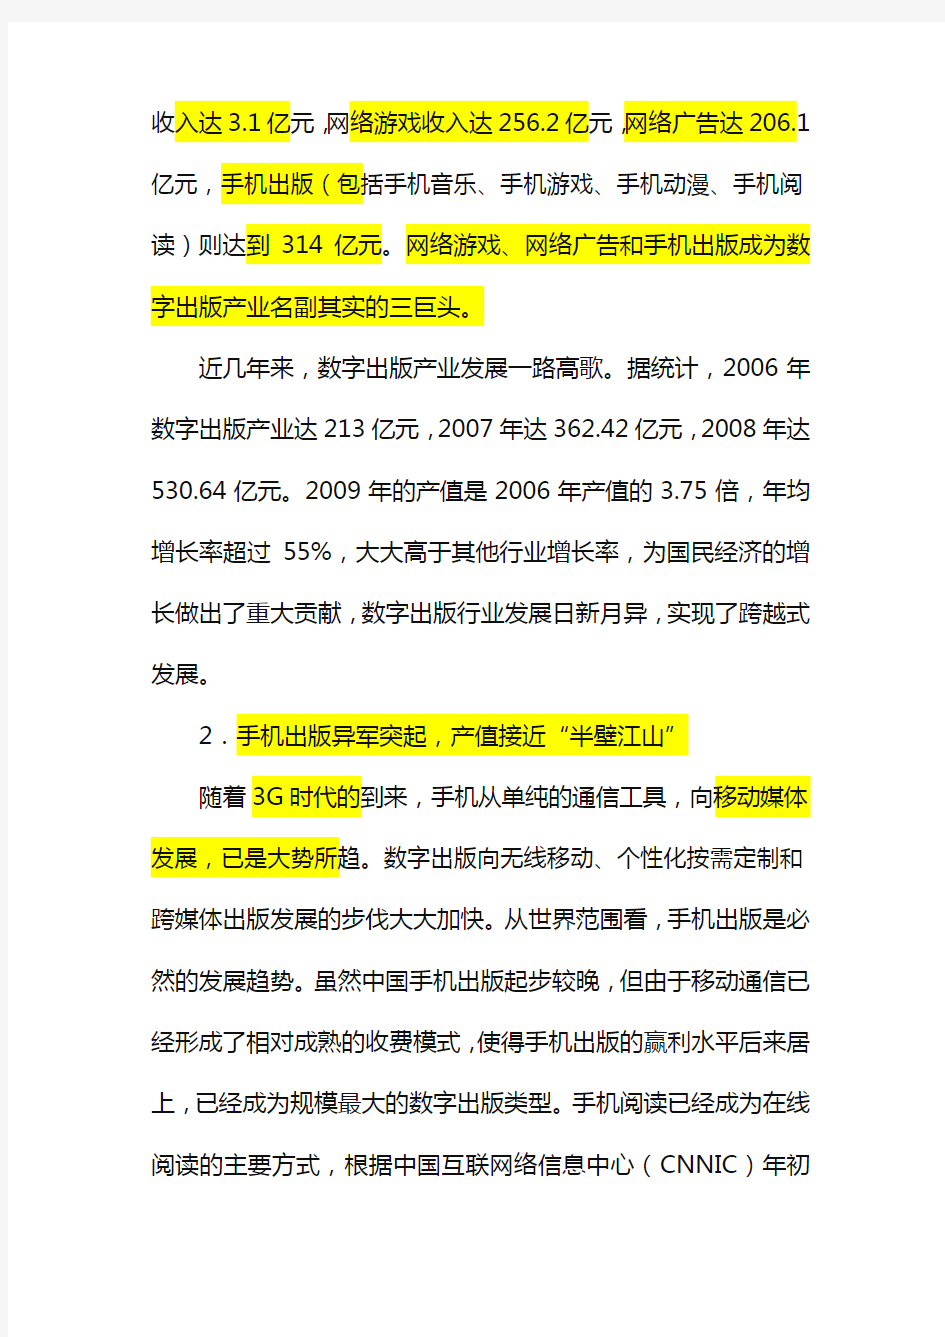 (年度报告)中国数字出版产业年度报告